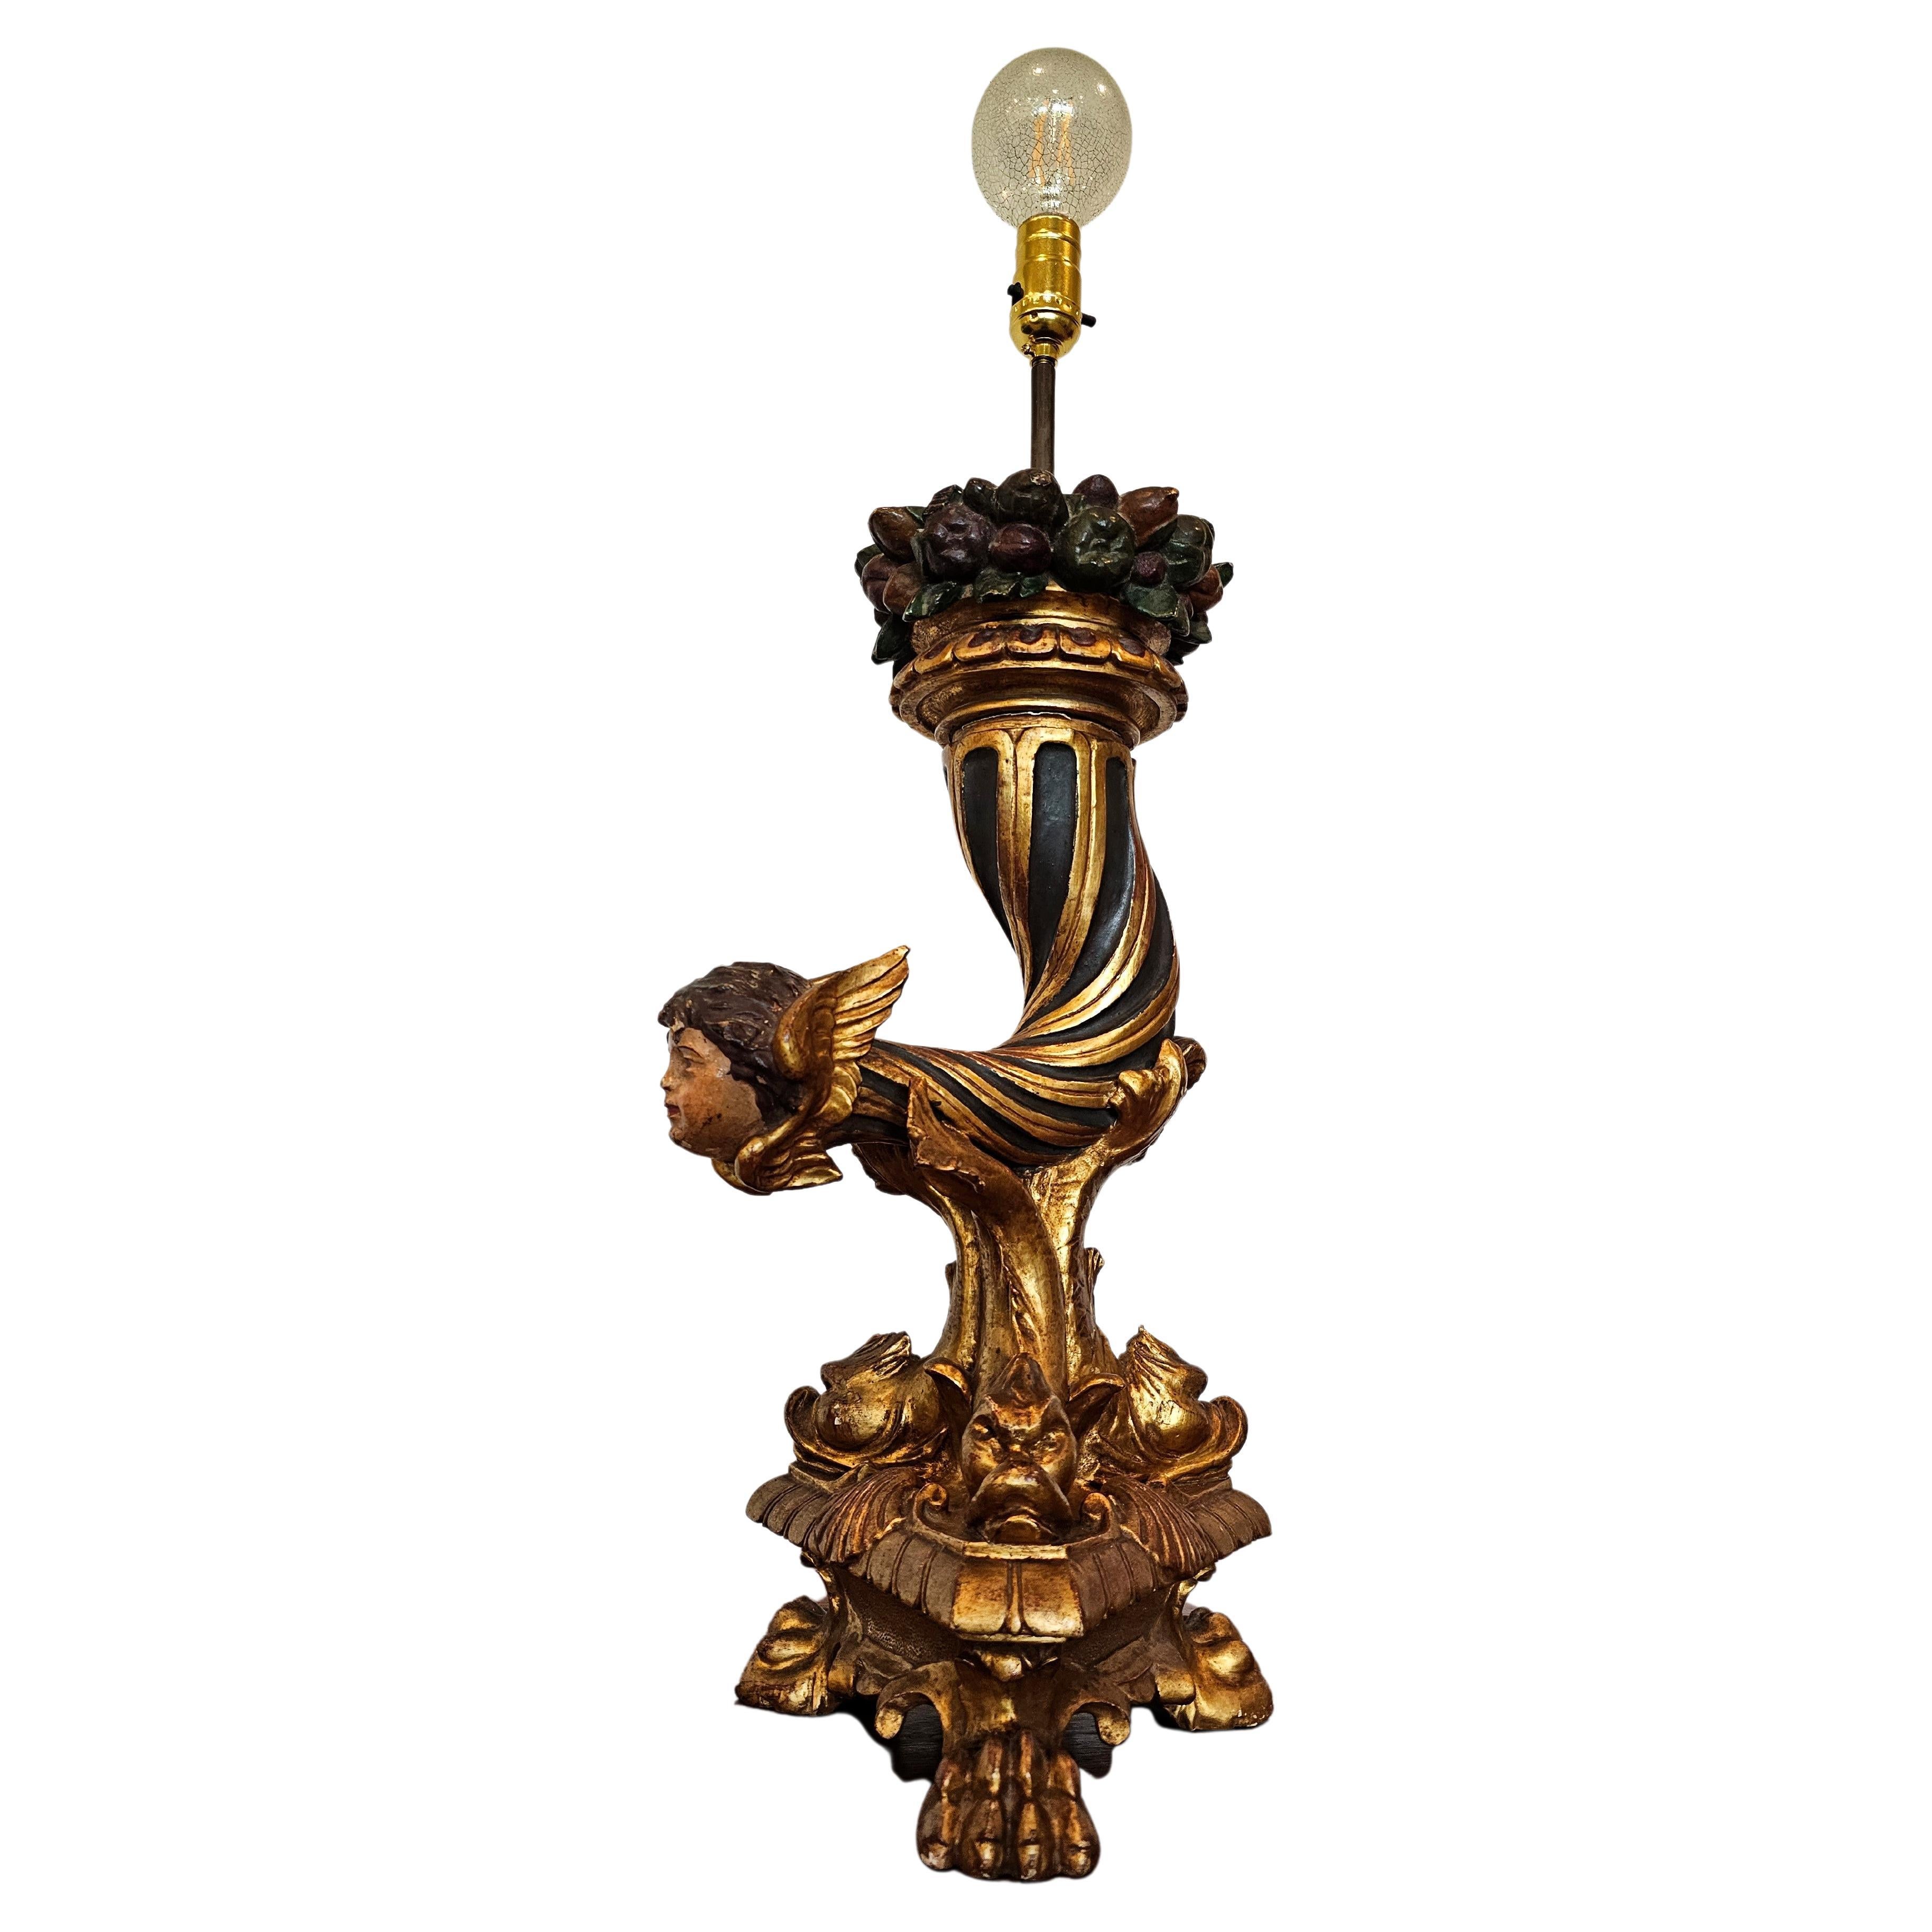 Lampe de table en bois sculpté et doré Figural Putti ailé du début du 19e siècle